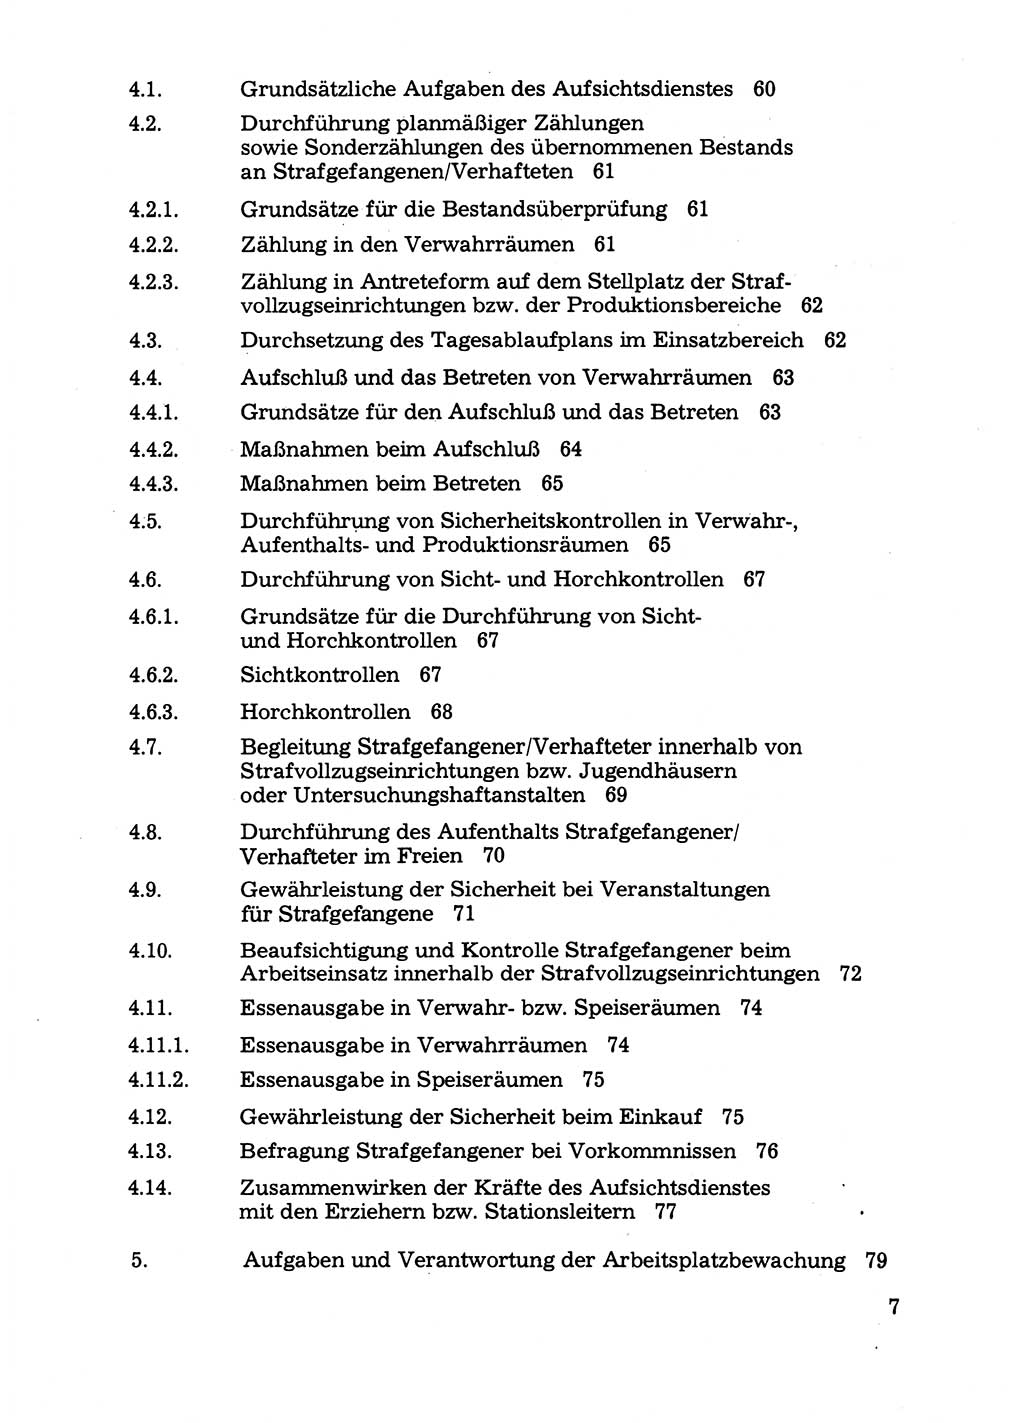 Handbuch für operative Dienste, Abteilung Strafvollzug (SV) [Ministerium des Innern (MdI) Deutsche Demokratische Republik (DDR)] 1981, Seite 7 (Hb. op. D. Abt. SV MdI DDR 1981, S. 7)